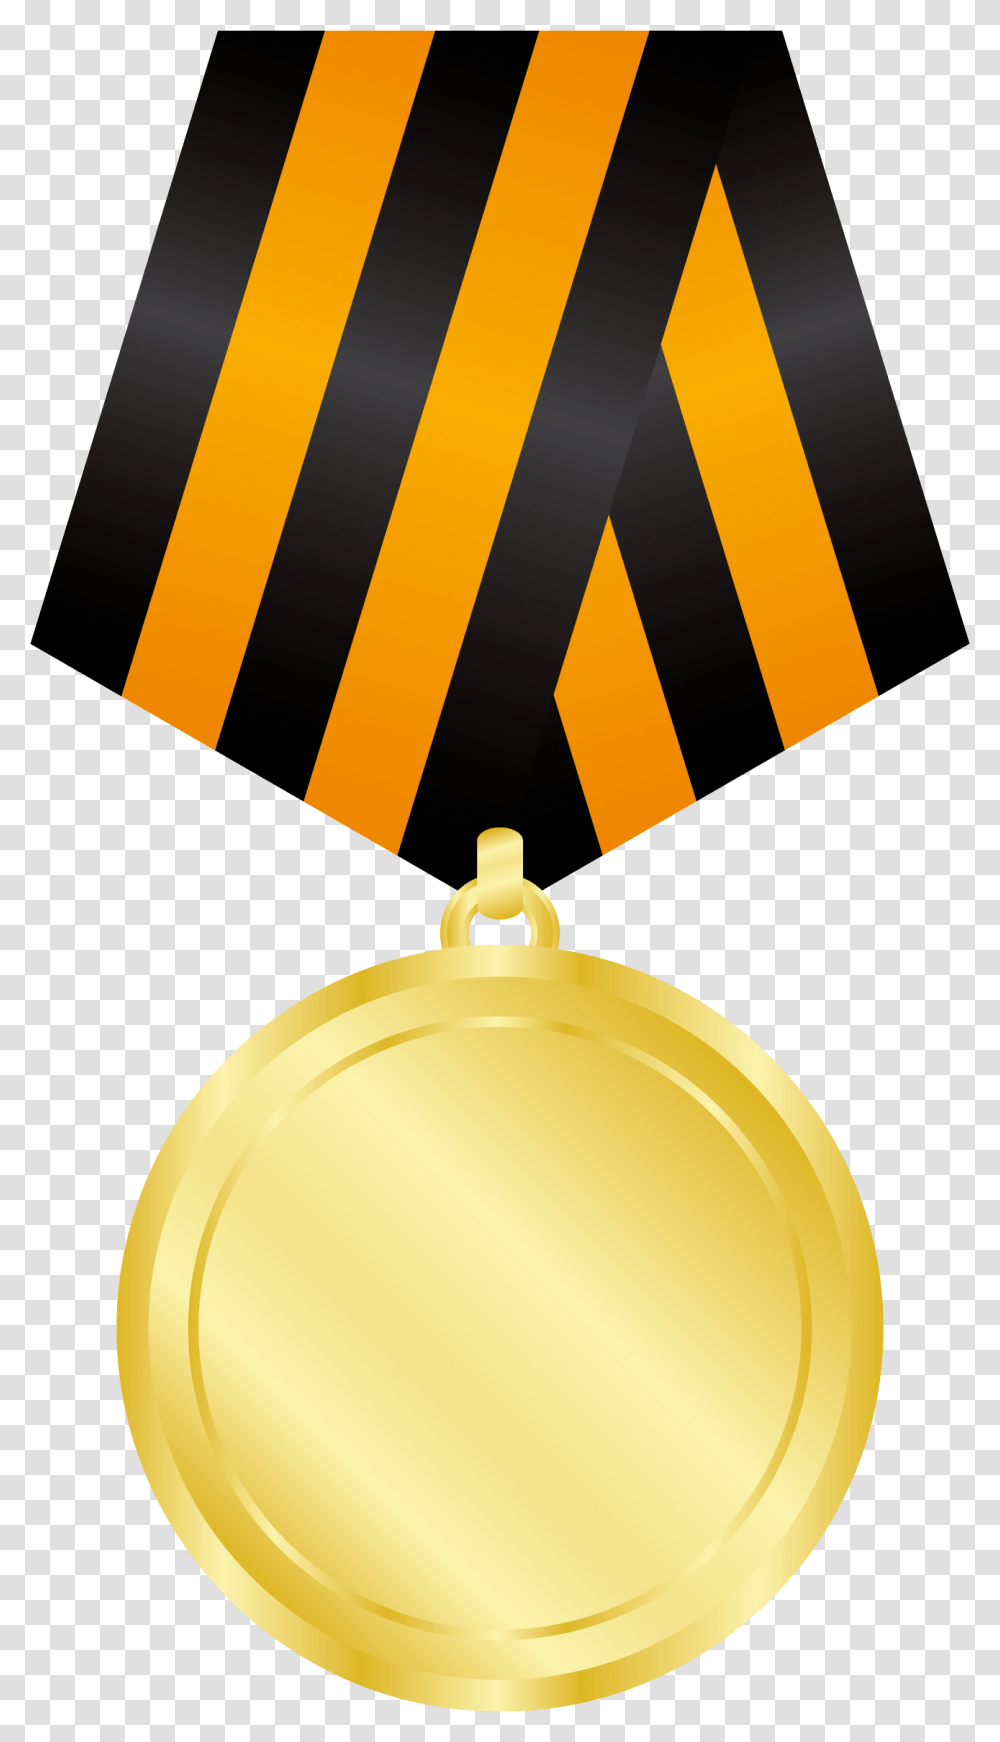 Gold Medal Free Background Gold Medal, Trophy, Lamp Transparent Png